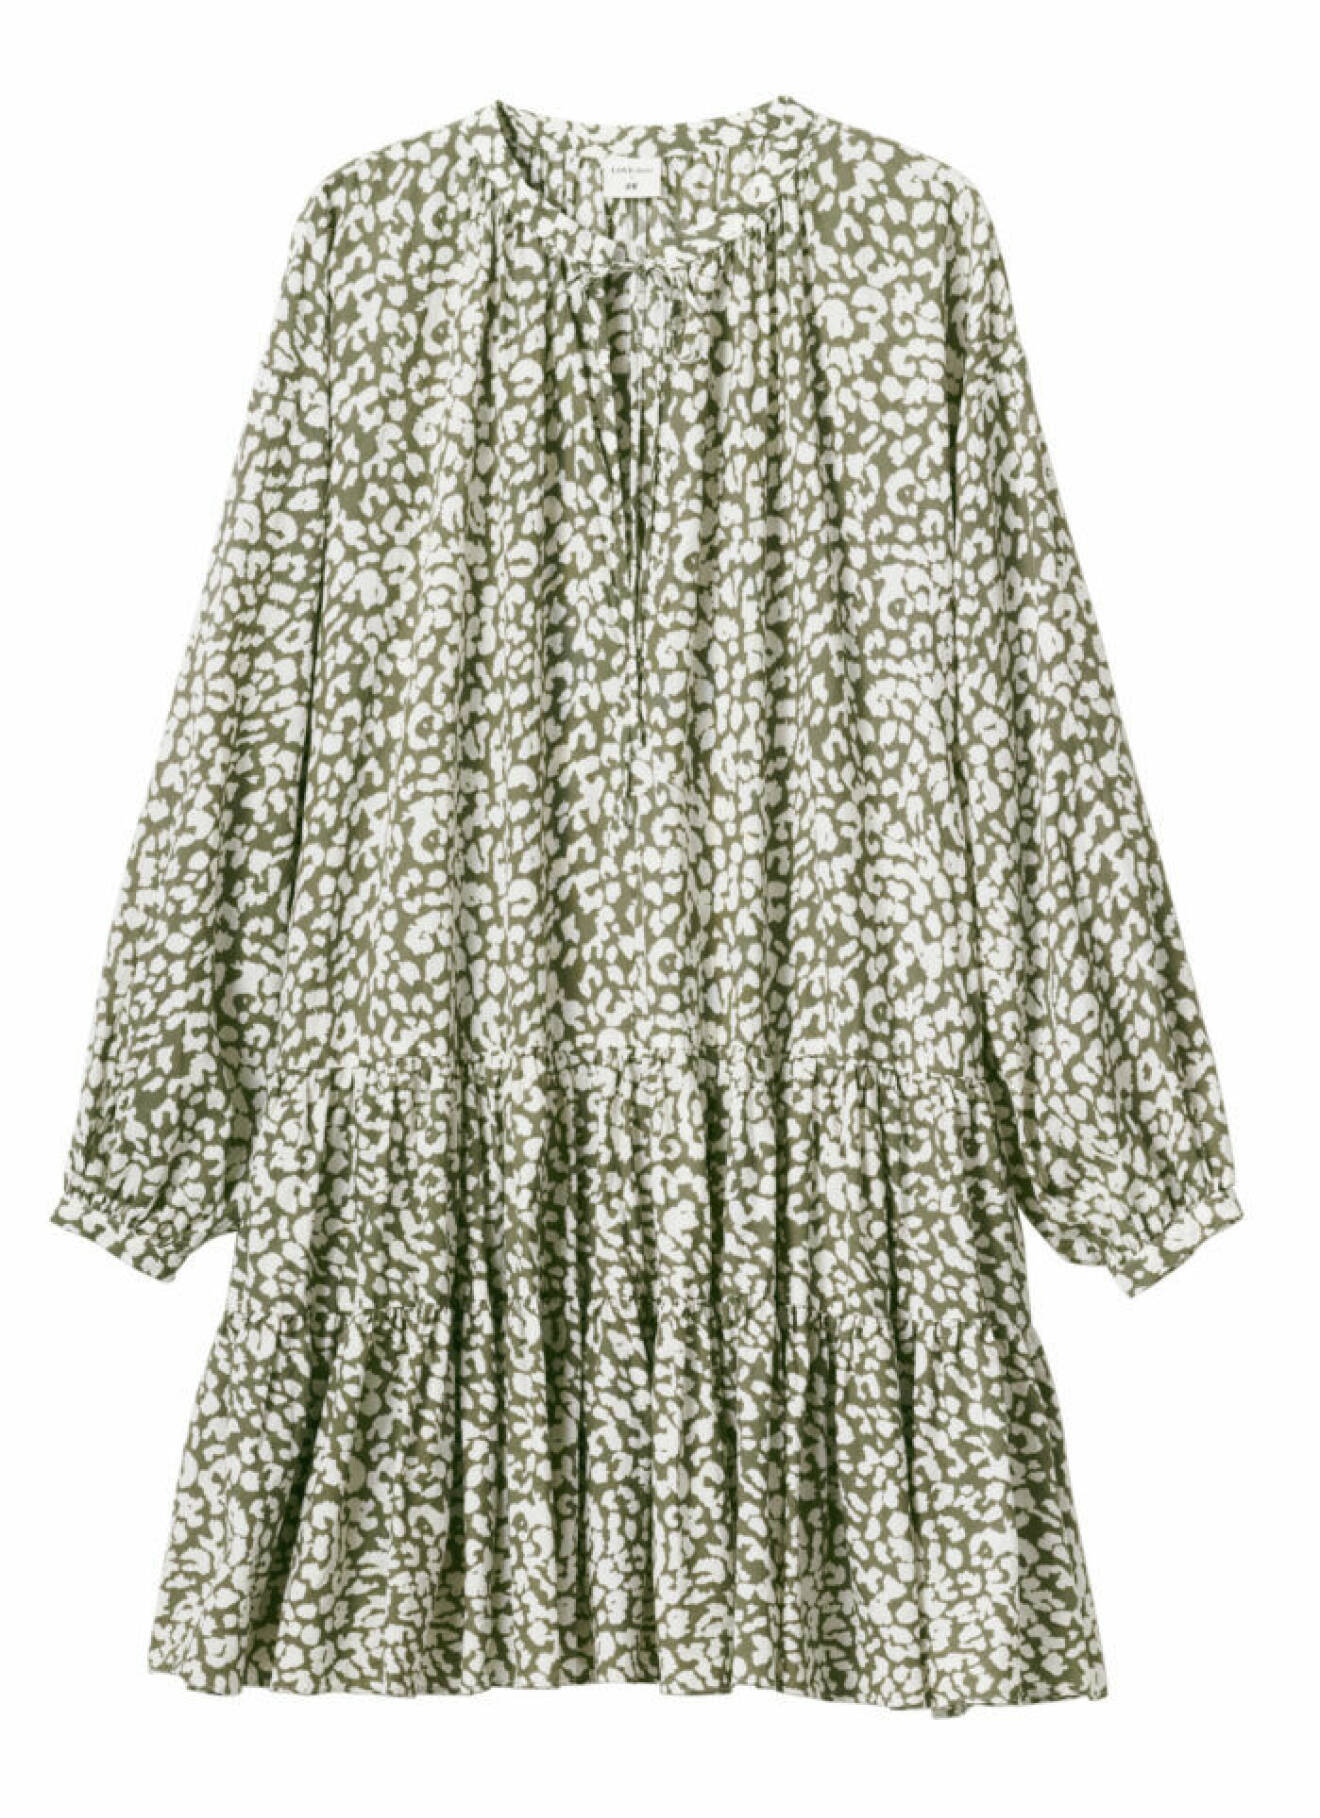 H&M släpper badkollektion med Love Stories – grön klänning